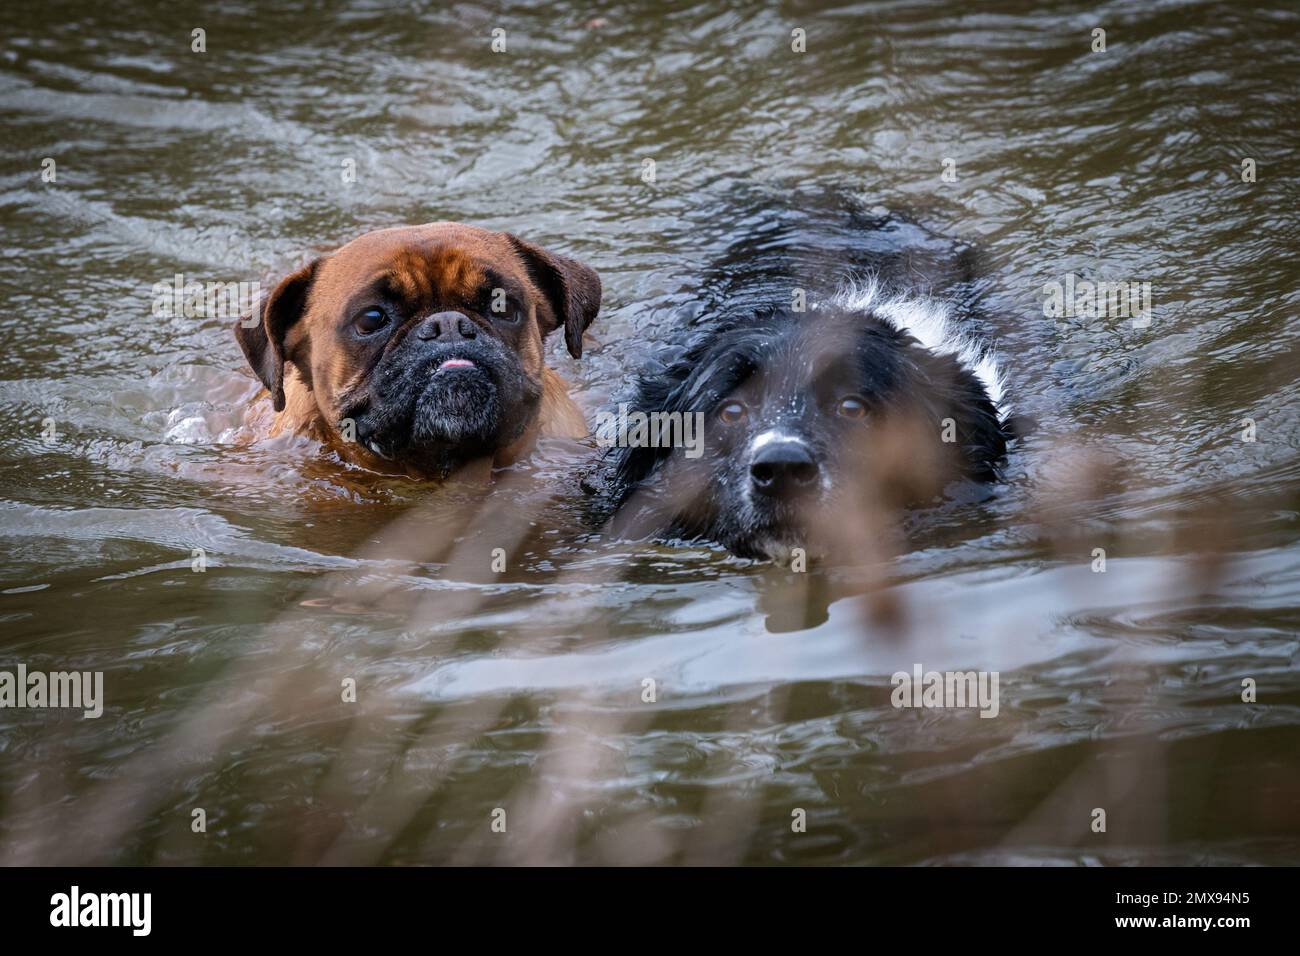 Deux visages de chiens drôles dans l'eau ? Ils nageurs dans un lac Banque D'Images